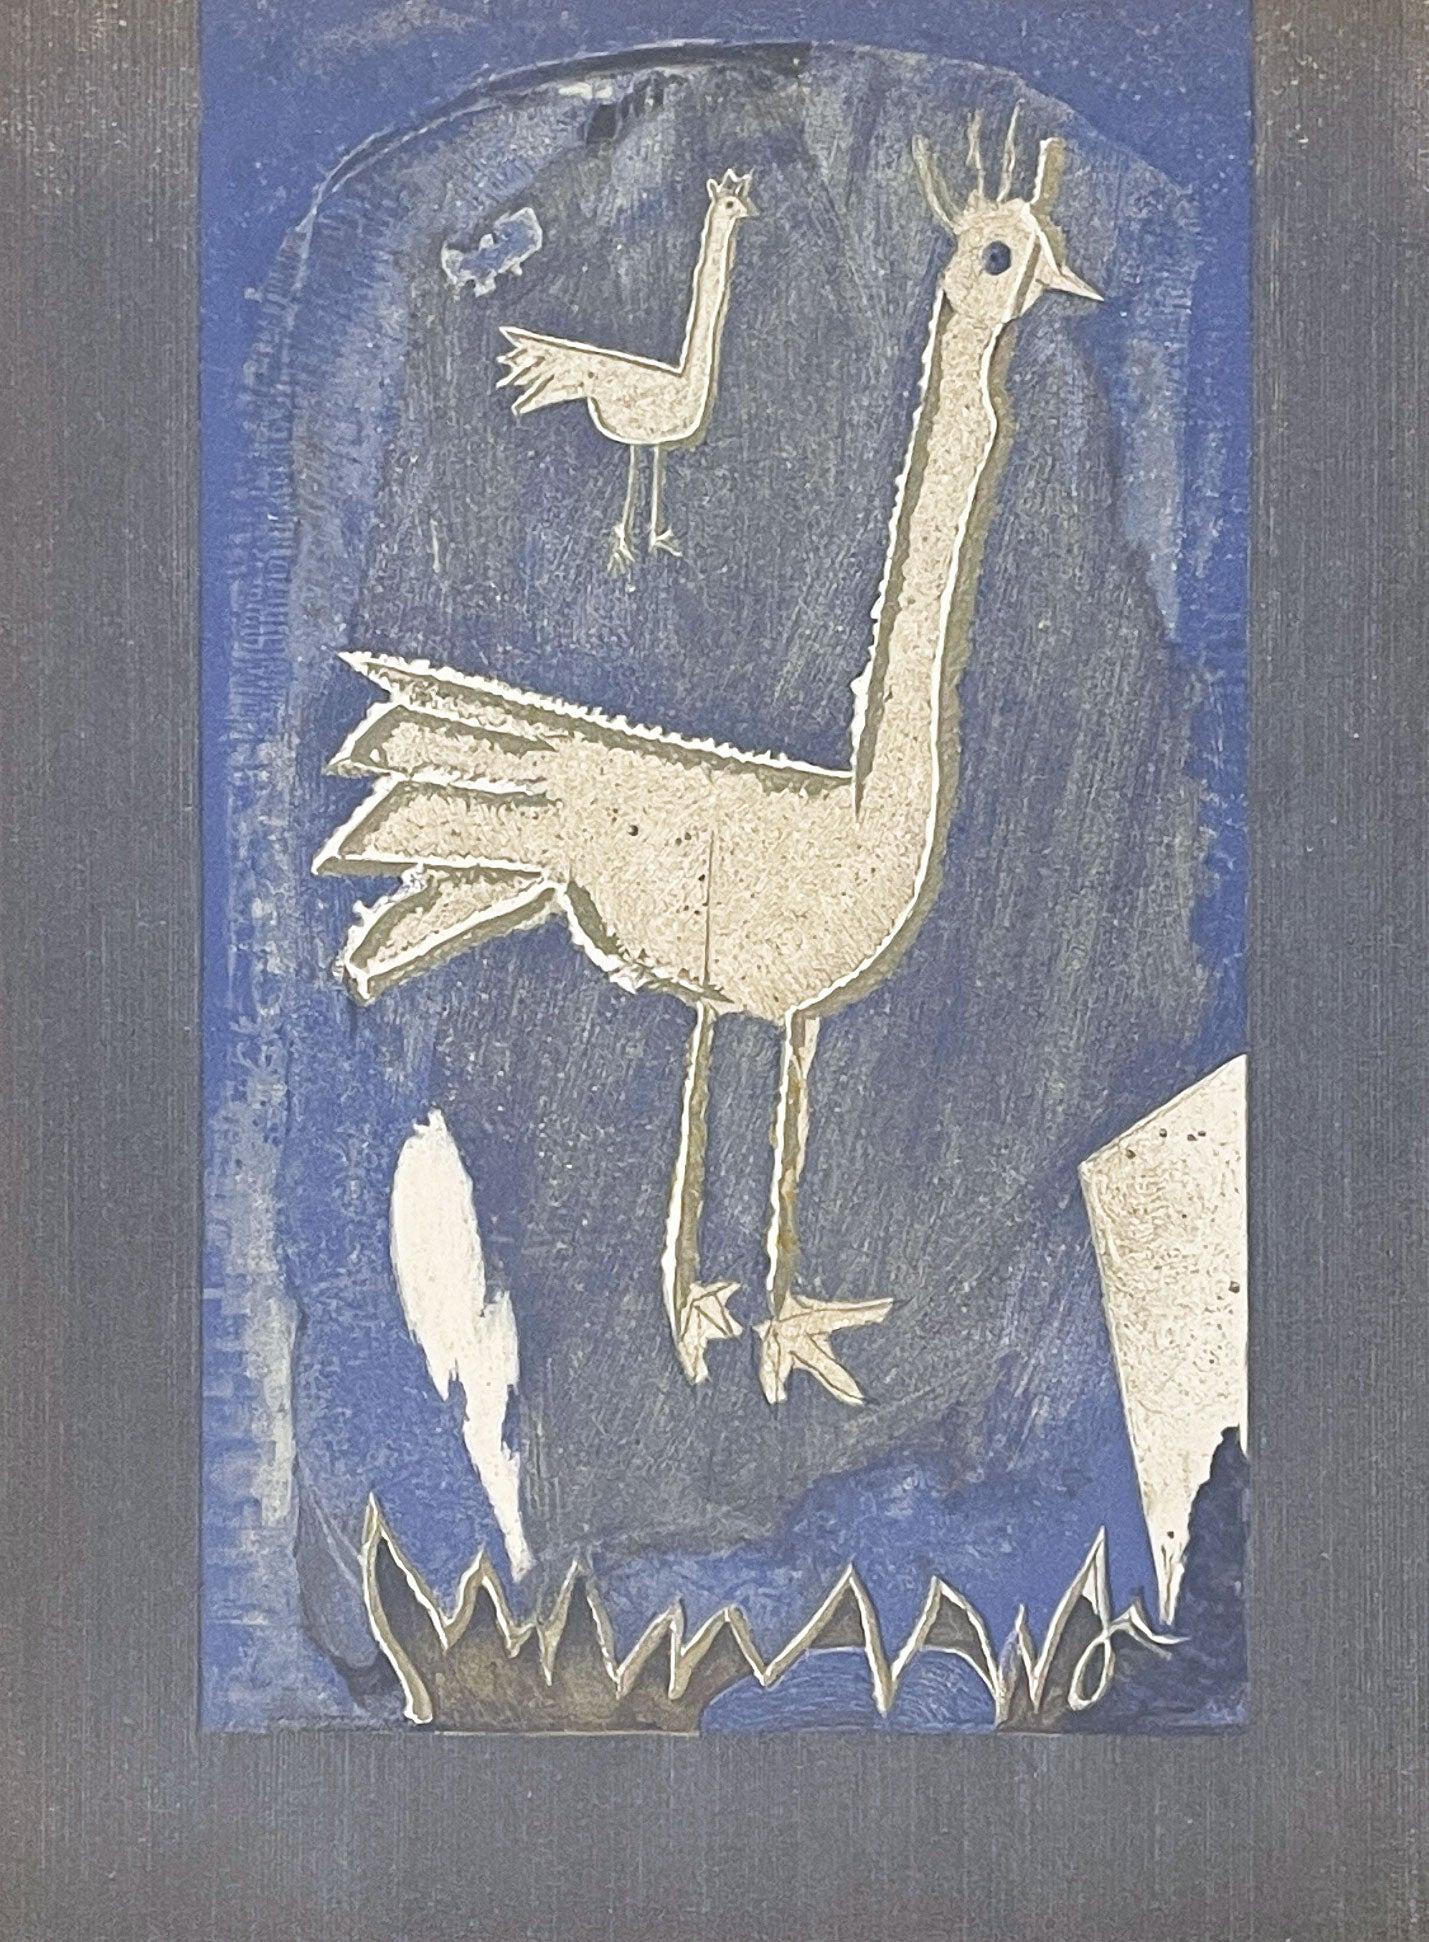 Künstler: Georges Braque
Titel: Le Coq
Mappe: Verve, Band VII, Nr. 27-28
Medium: Lithographie
Jahr: 1952
Auflage: 6000
Rahmen Größe: 22" x 18 1/4"
Blattgröße: 14" x 10"
Unterschrieben: Unsigniert